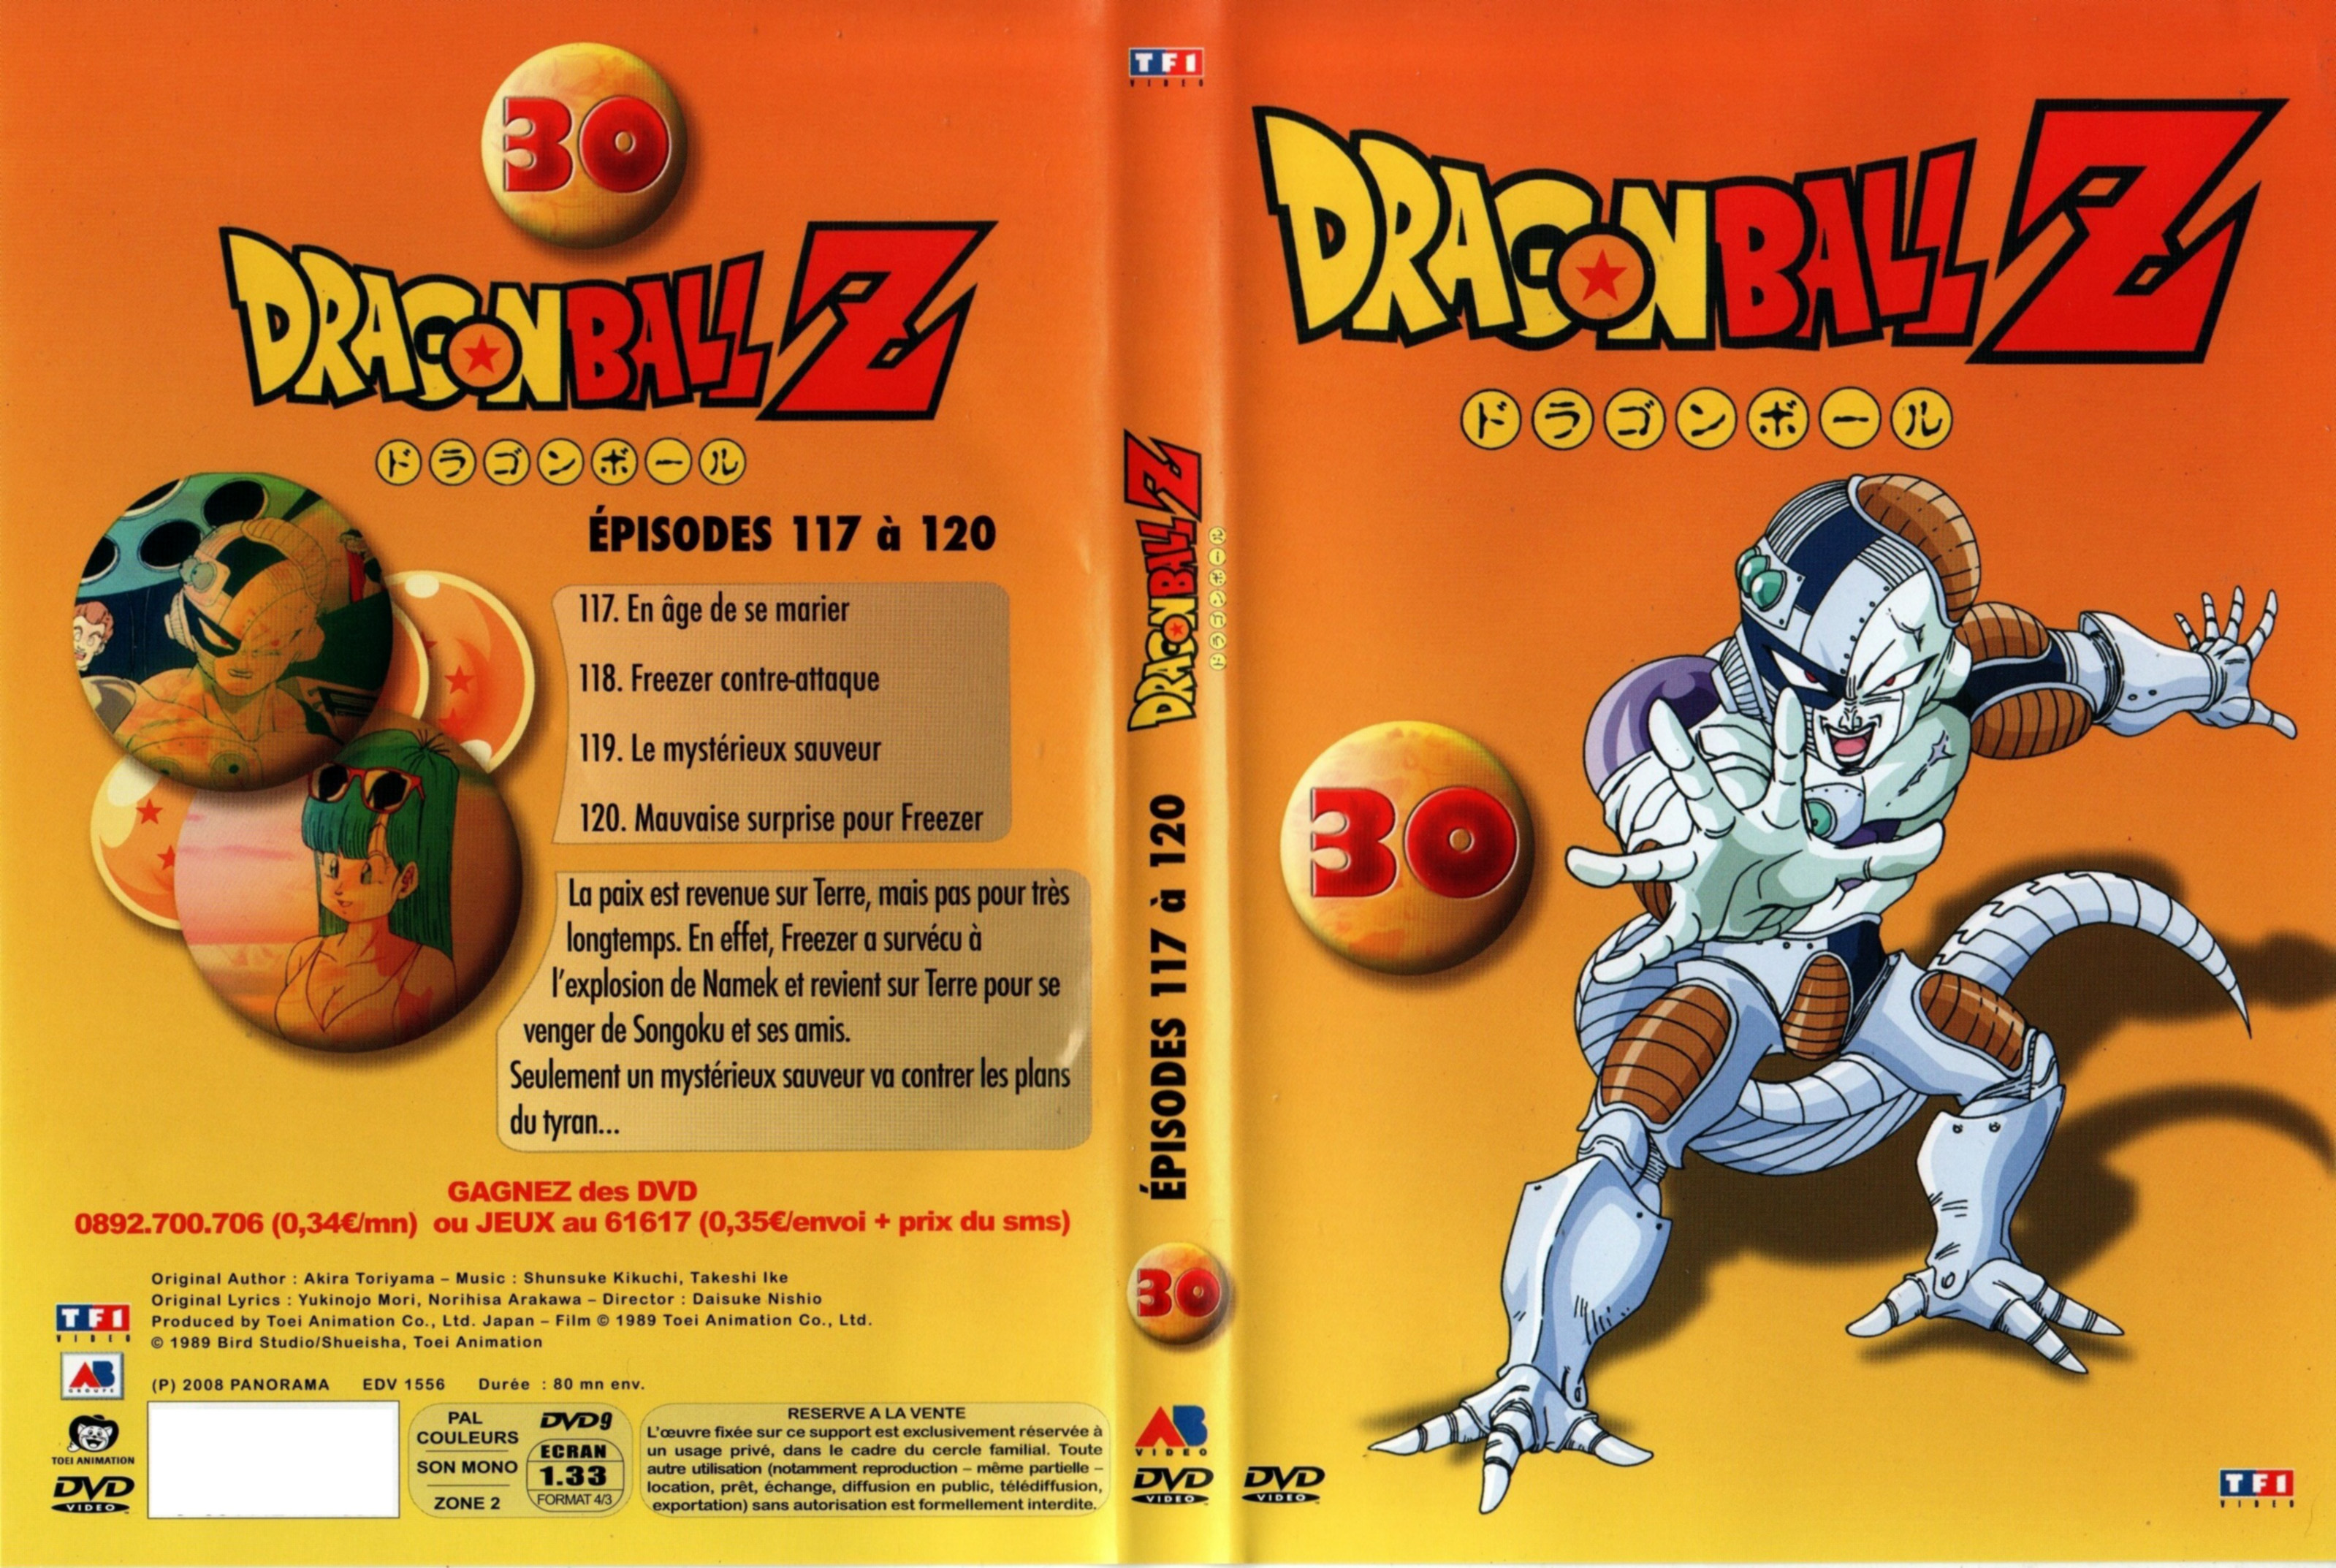 Jaquette DVD Dragon Ball Z vol 30 v2